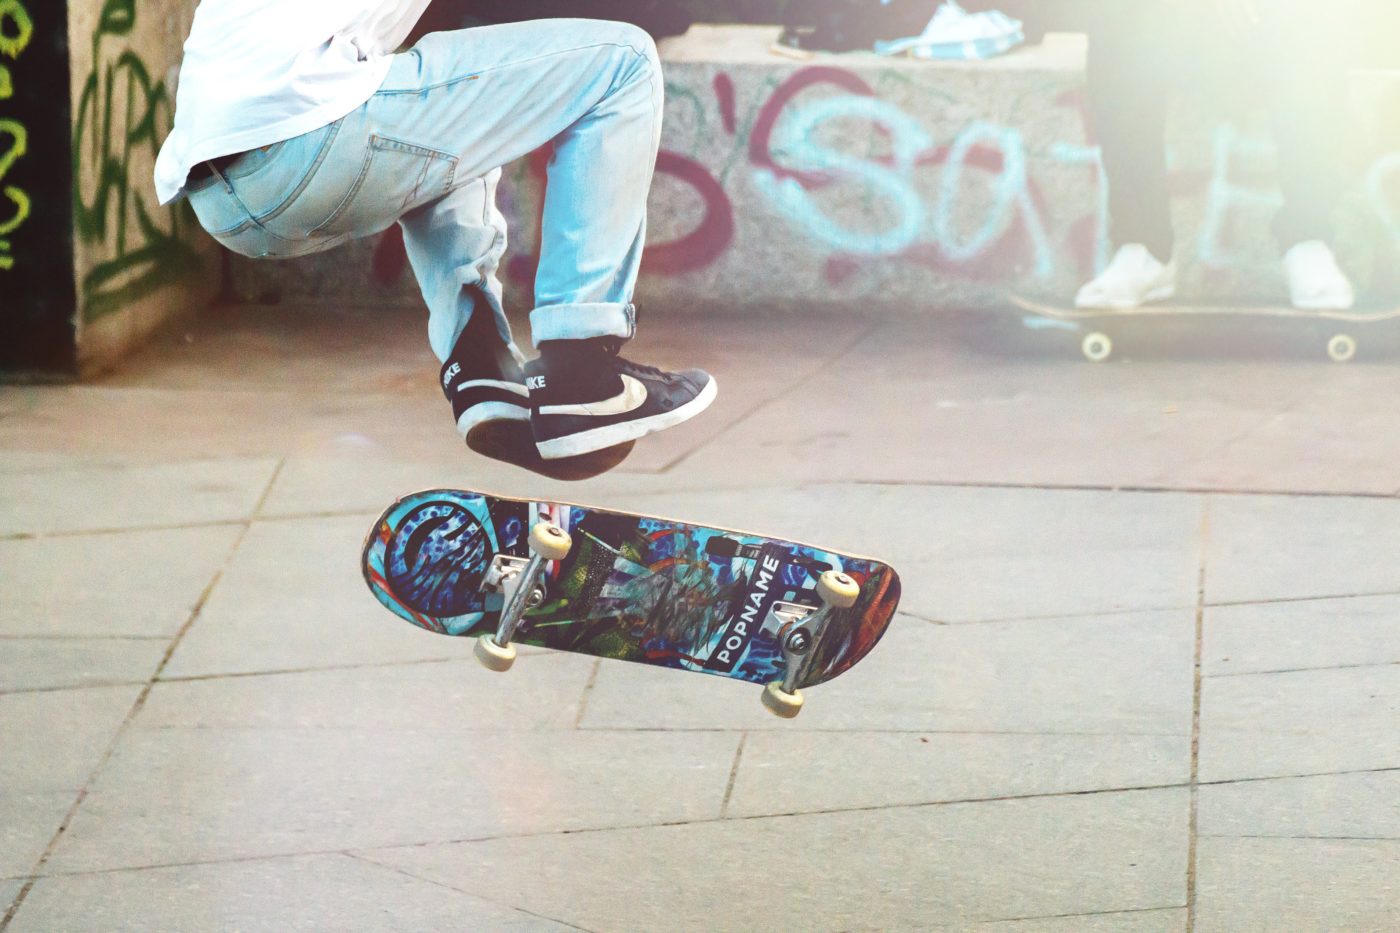 city break: explore by skateboard